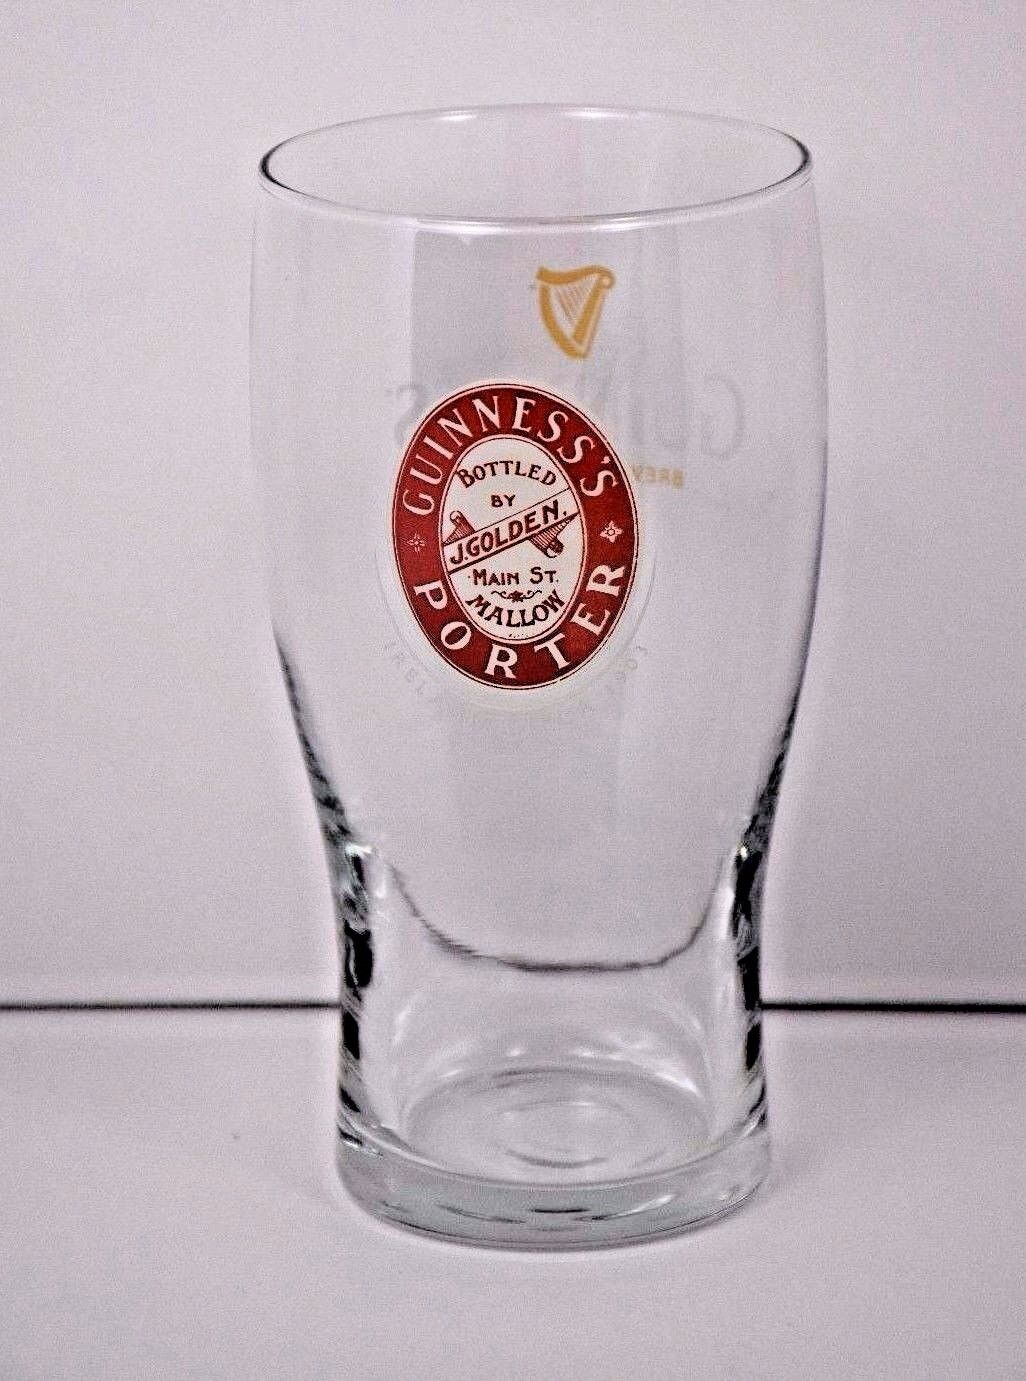 Guinness Porter Brewed in Dublin Bottled J Golden Harp Label 6” Pint Glass 500ml